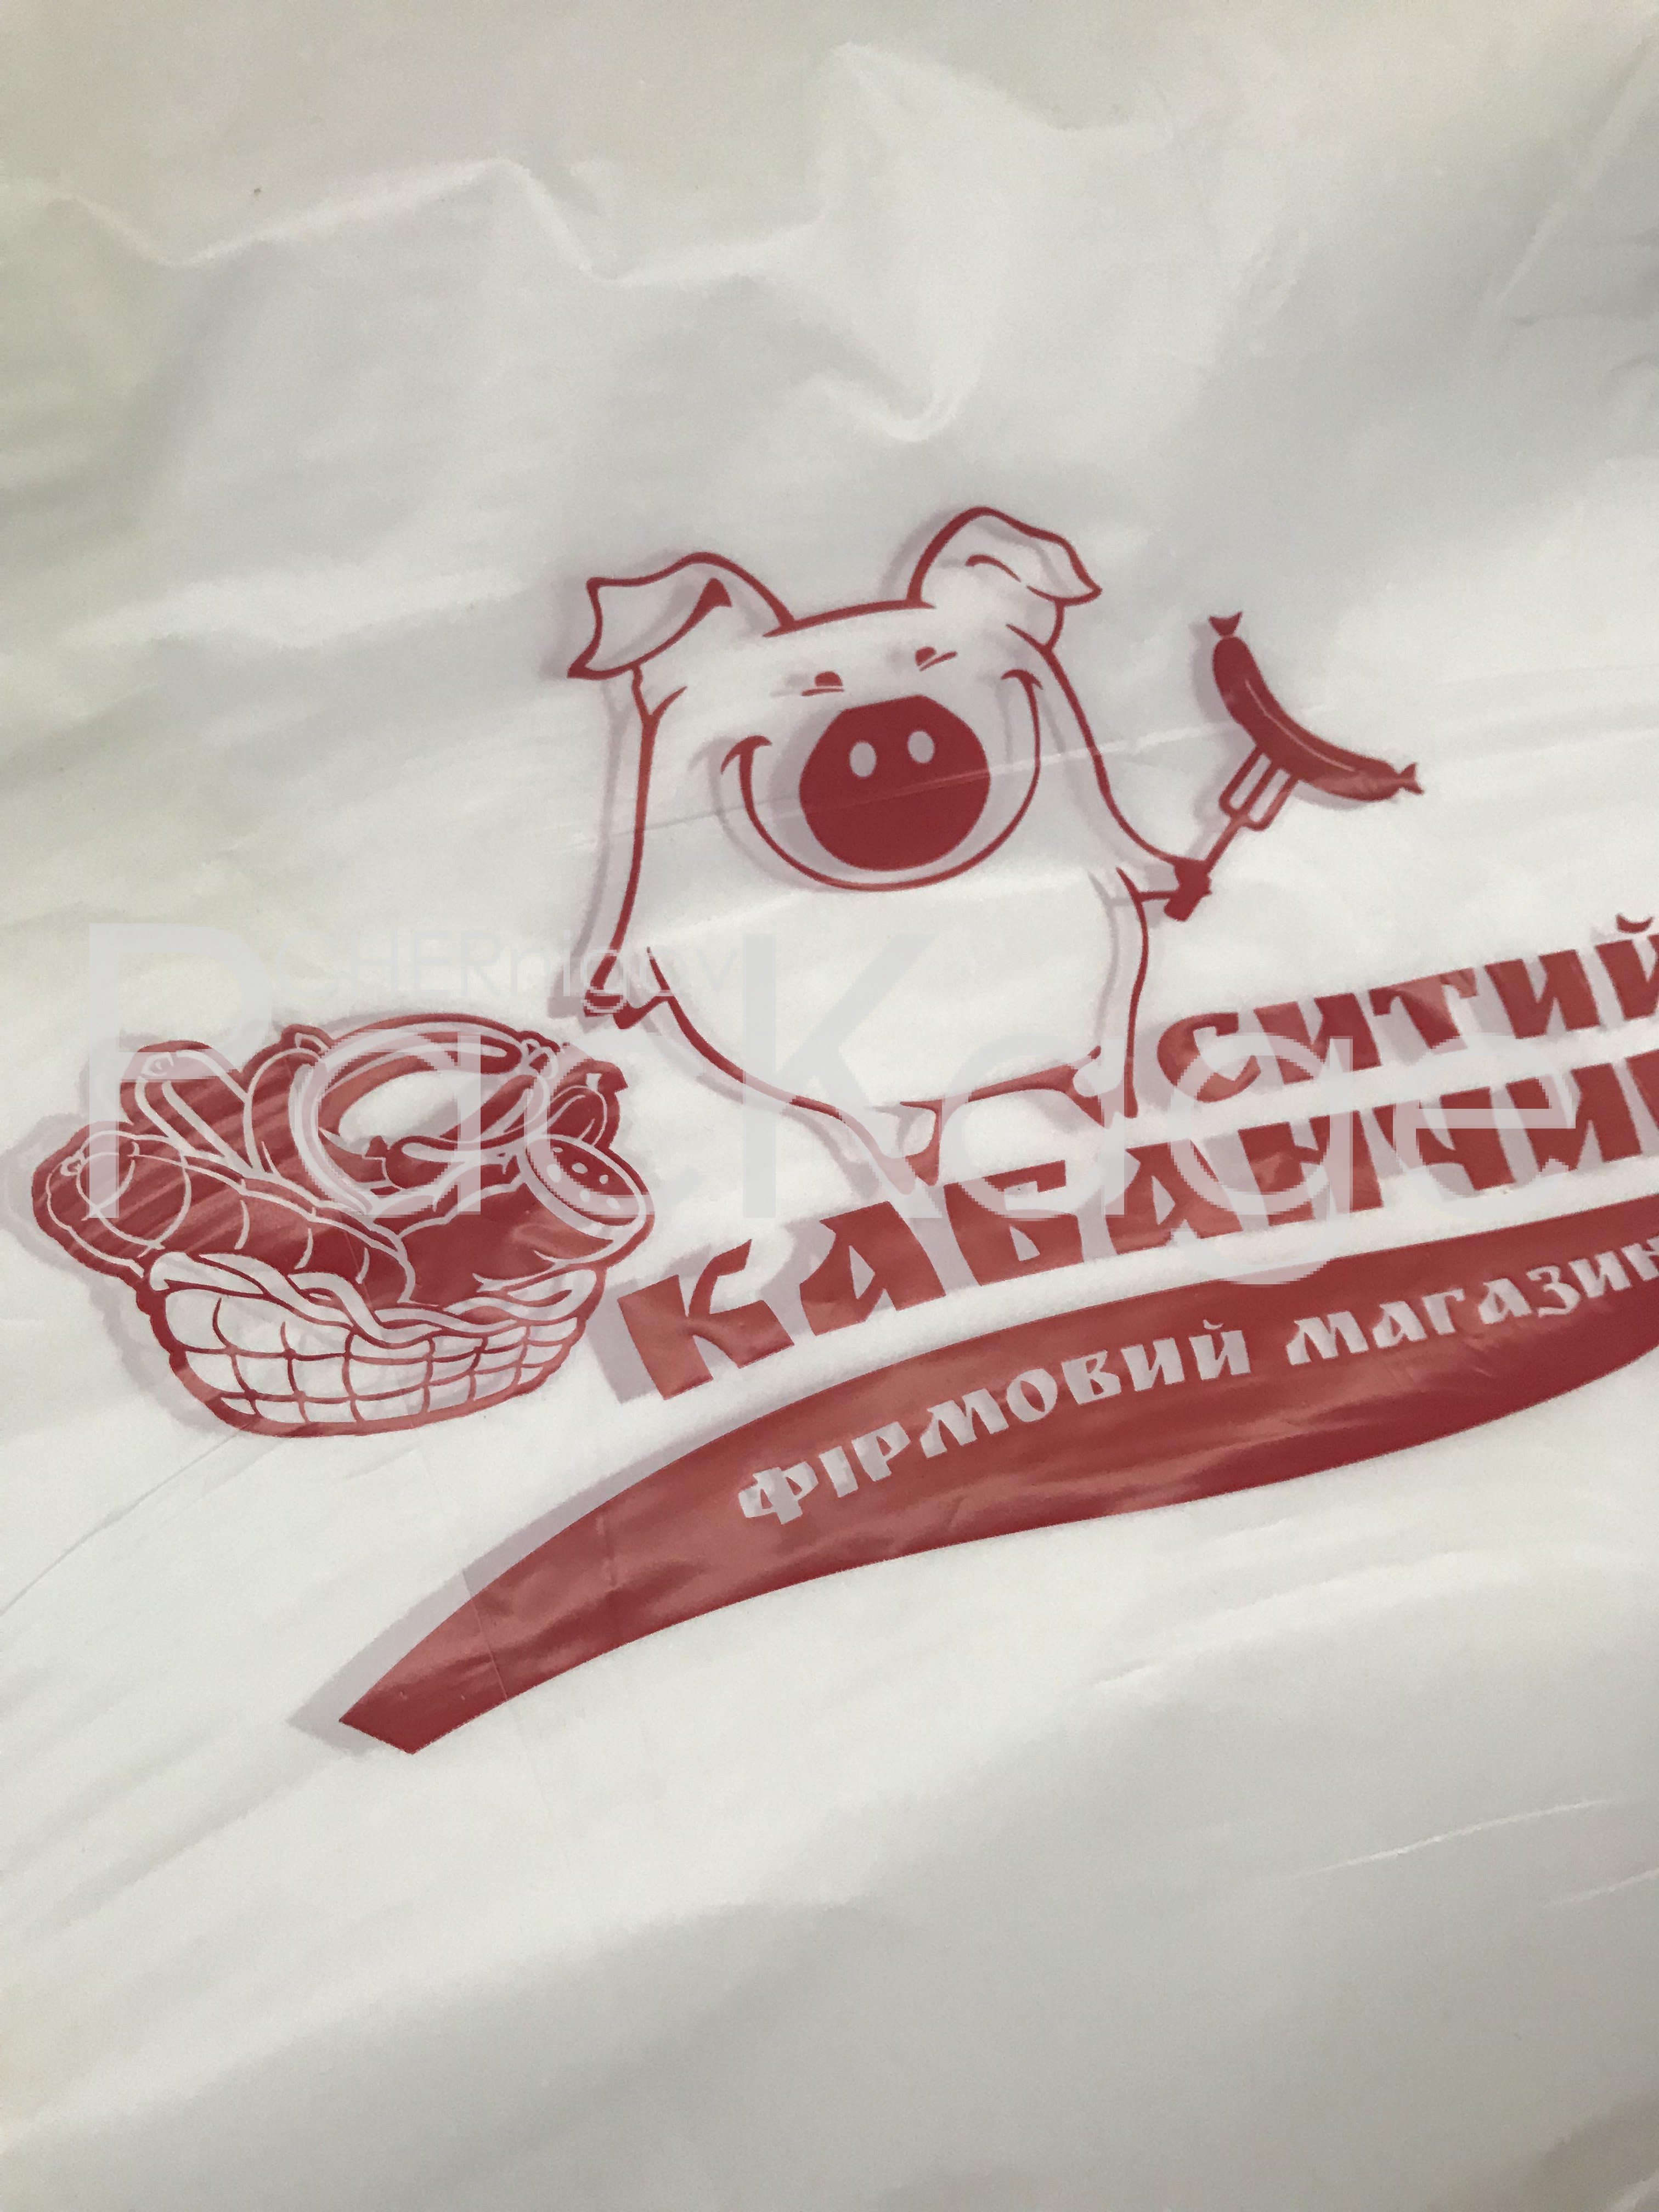 Фирменный полиэтиленовый пакет с логотипом Chernigov Package - Photo unnamed (3)